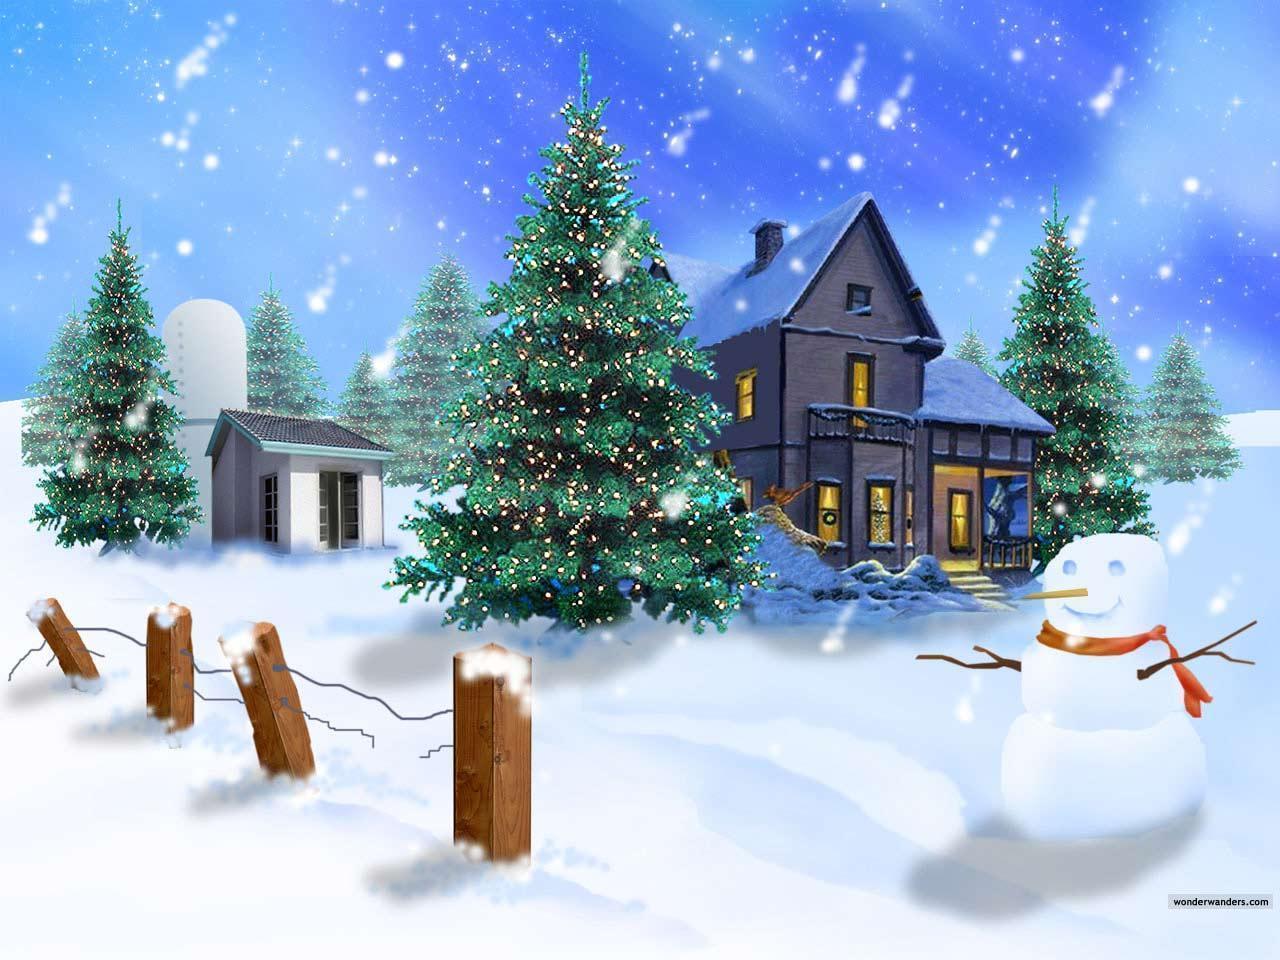 Snowman picture free desktop backgrounds